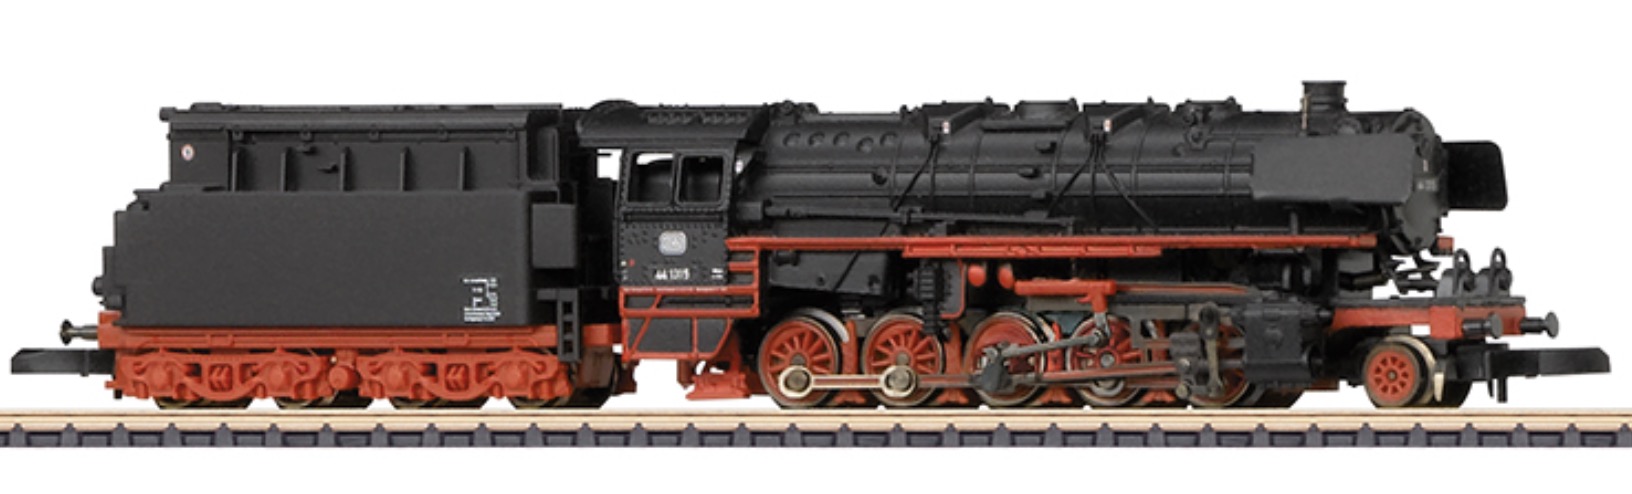 Z Scale - Märklin - 88975 - Locomotive, Steam, 2-10-0, Class 44, Epoch III - Deutsche Bundesbahn - 44 1315